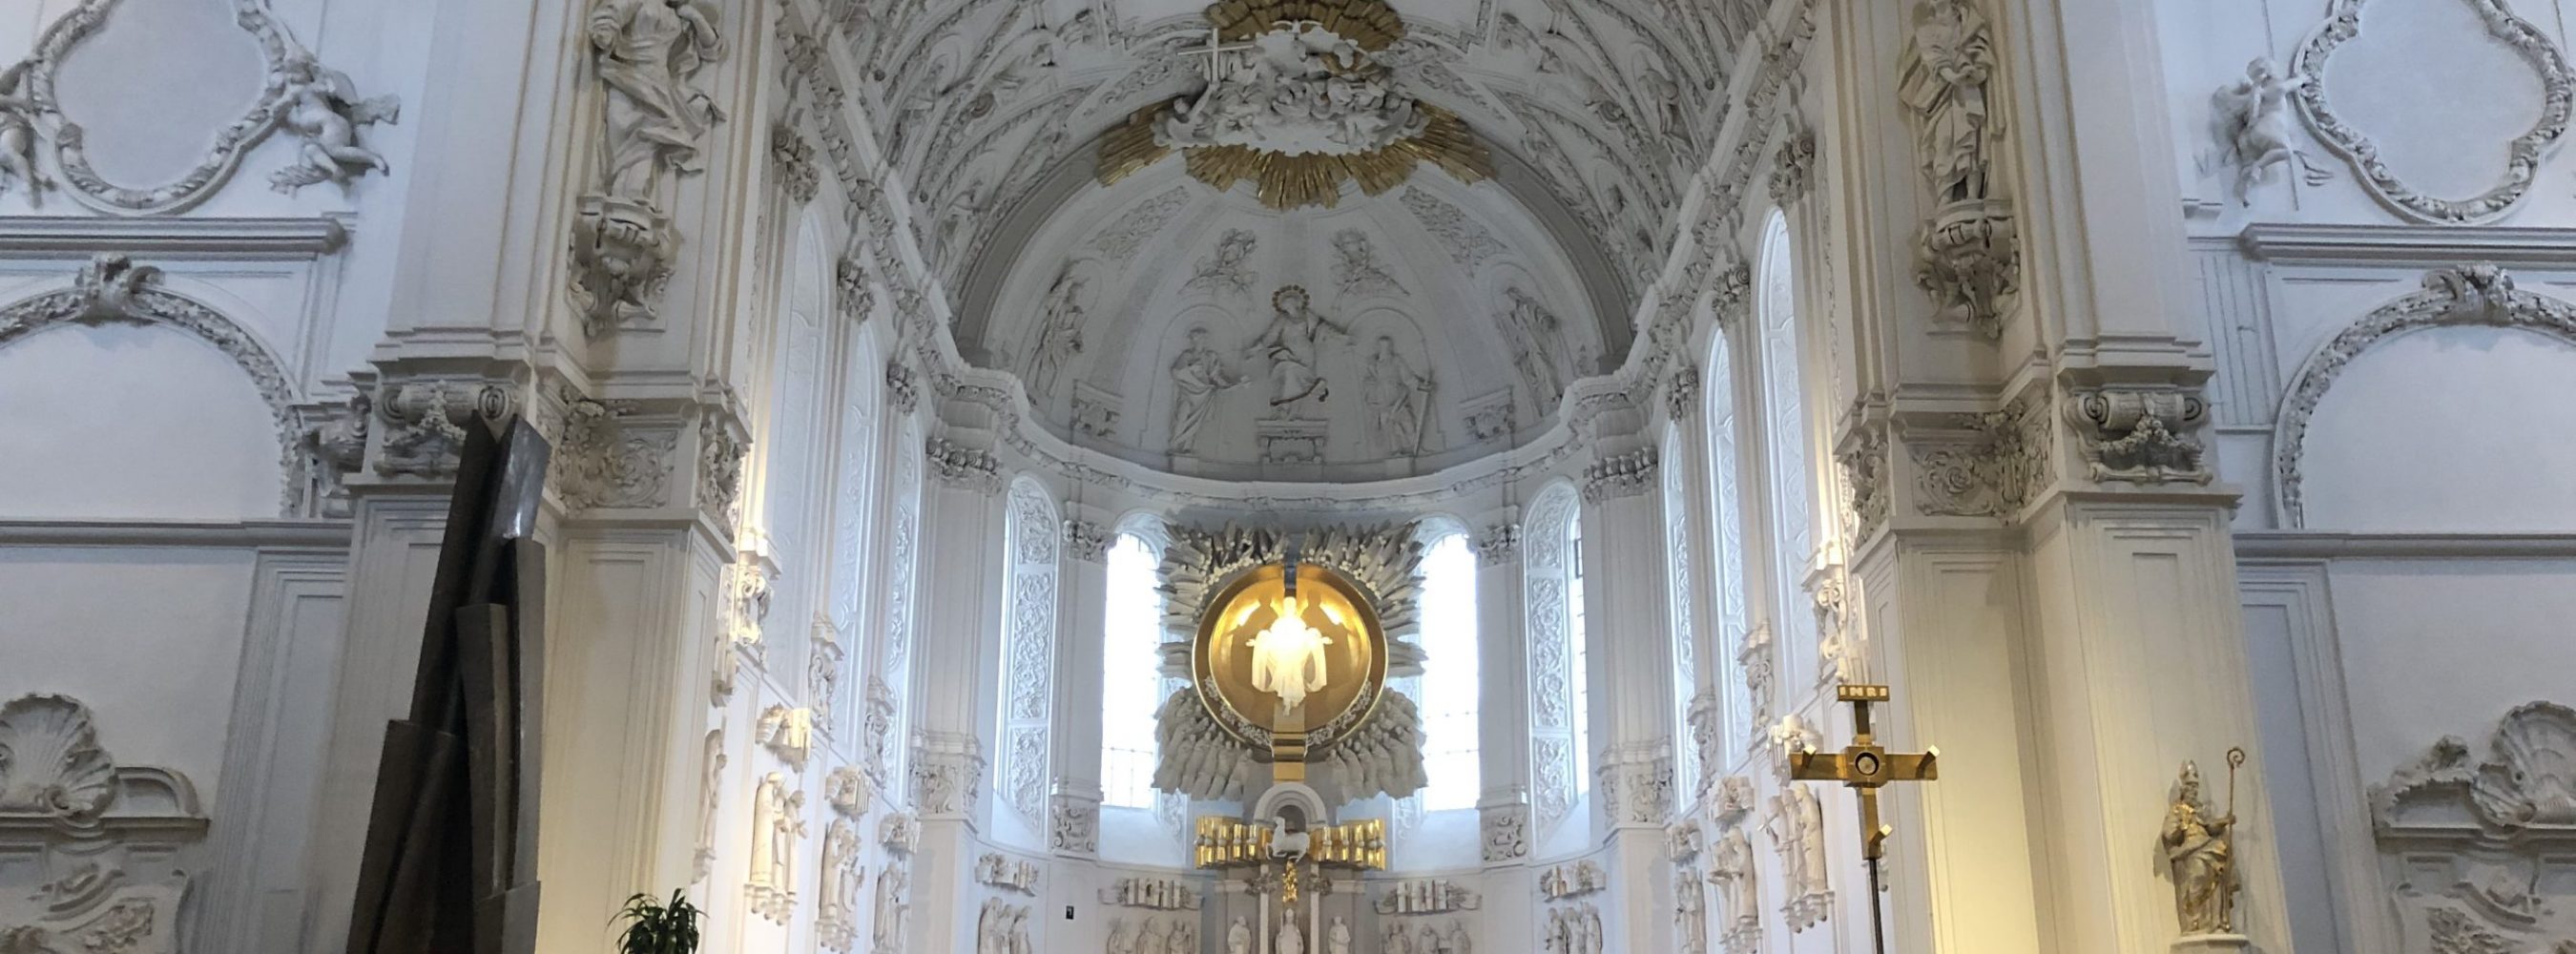 Würzburger Dom Altar